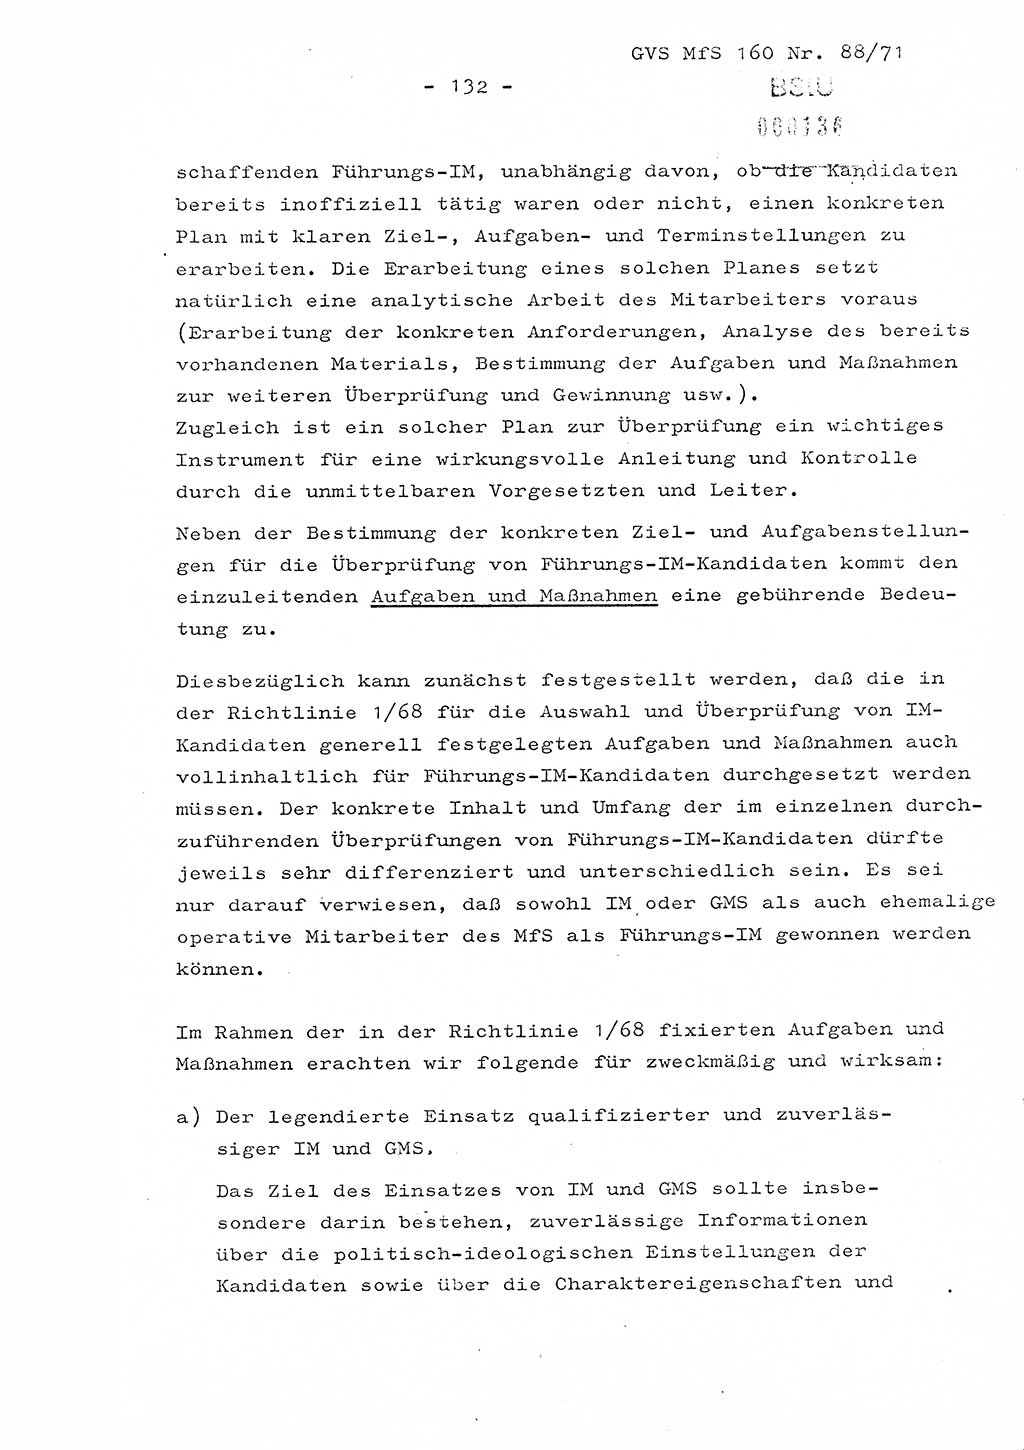 Dissertation Oberstleutnant Josef Schwarz (BV Schwerin), Major Fritz Amm (JHS), Hauptmann Peter Gräßler (JHS), Ministerium für Staatssicherheit (MfS) [Deutsche Demokratische Republik (DDR)], Juristische Hochschule (JHS), Geheime Verschlußsache (GVS) 160-88/71, Potsdam 1972, Seite 132 (Diss. MfS DDR JHS GVS 160-88/71 1972, S. 132)